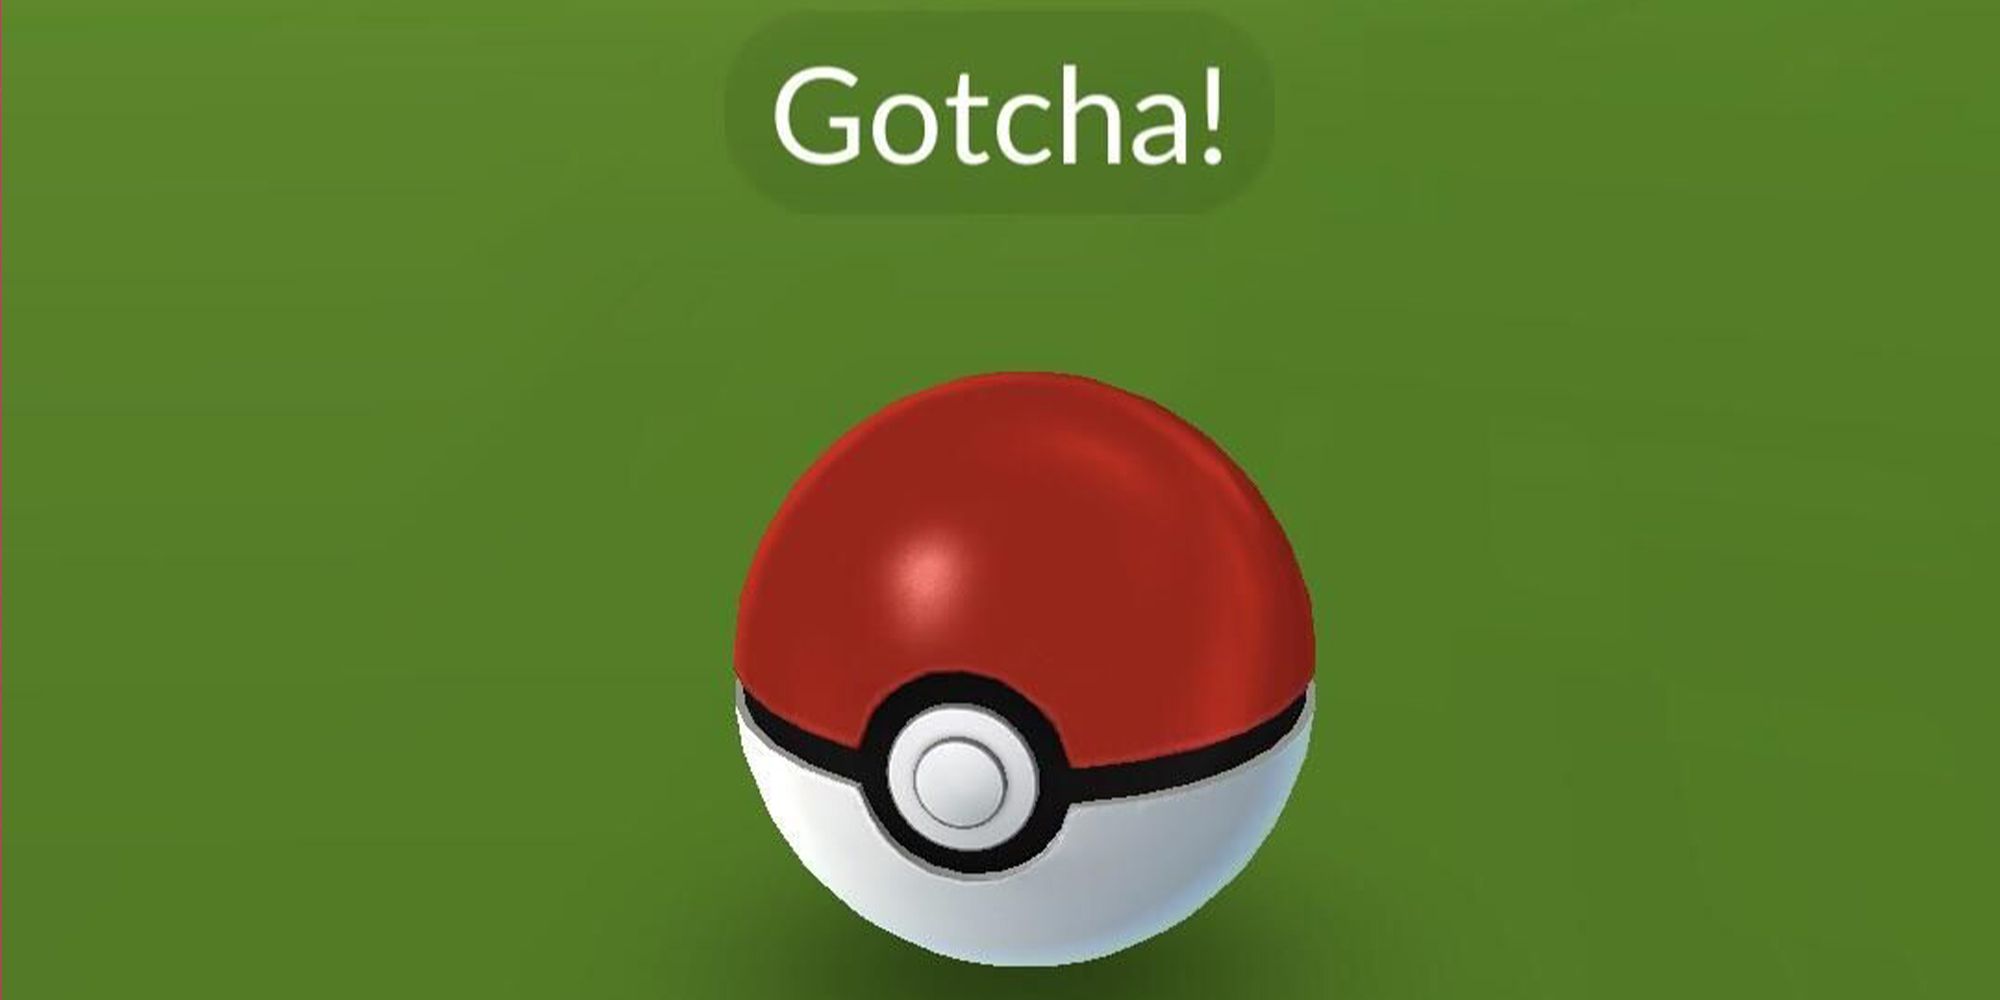 How To Do The Fast Catch Trick in Pokémon GO